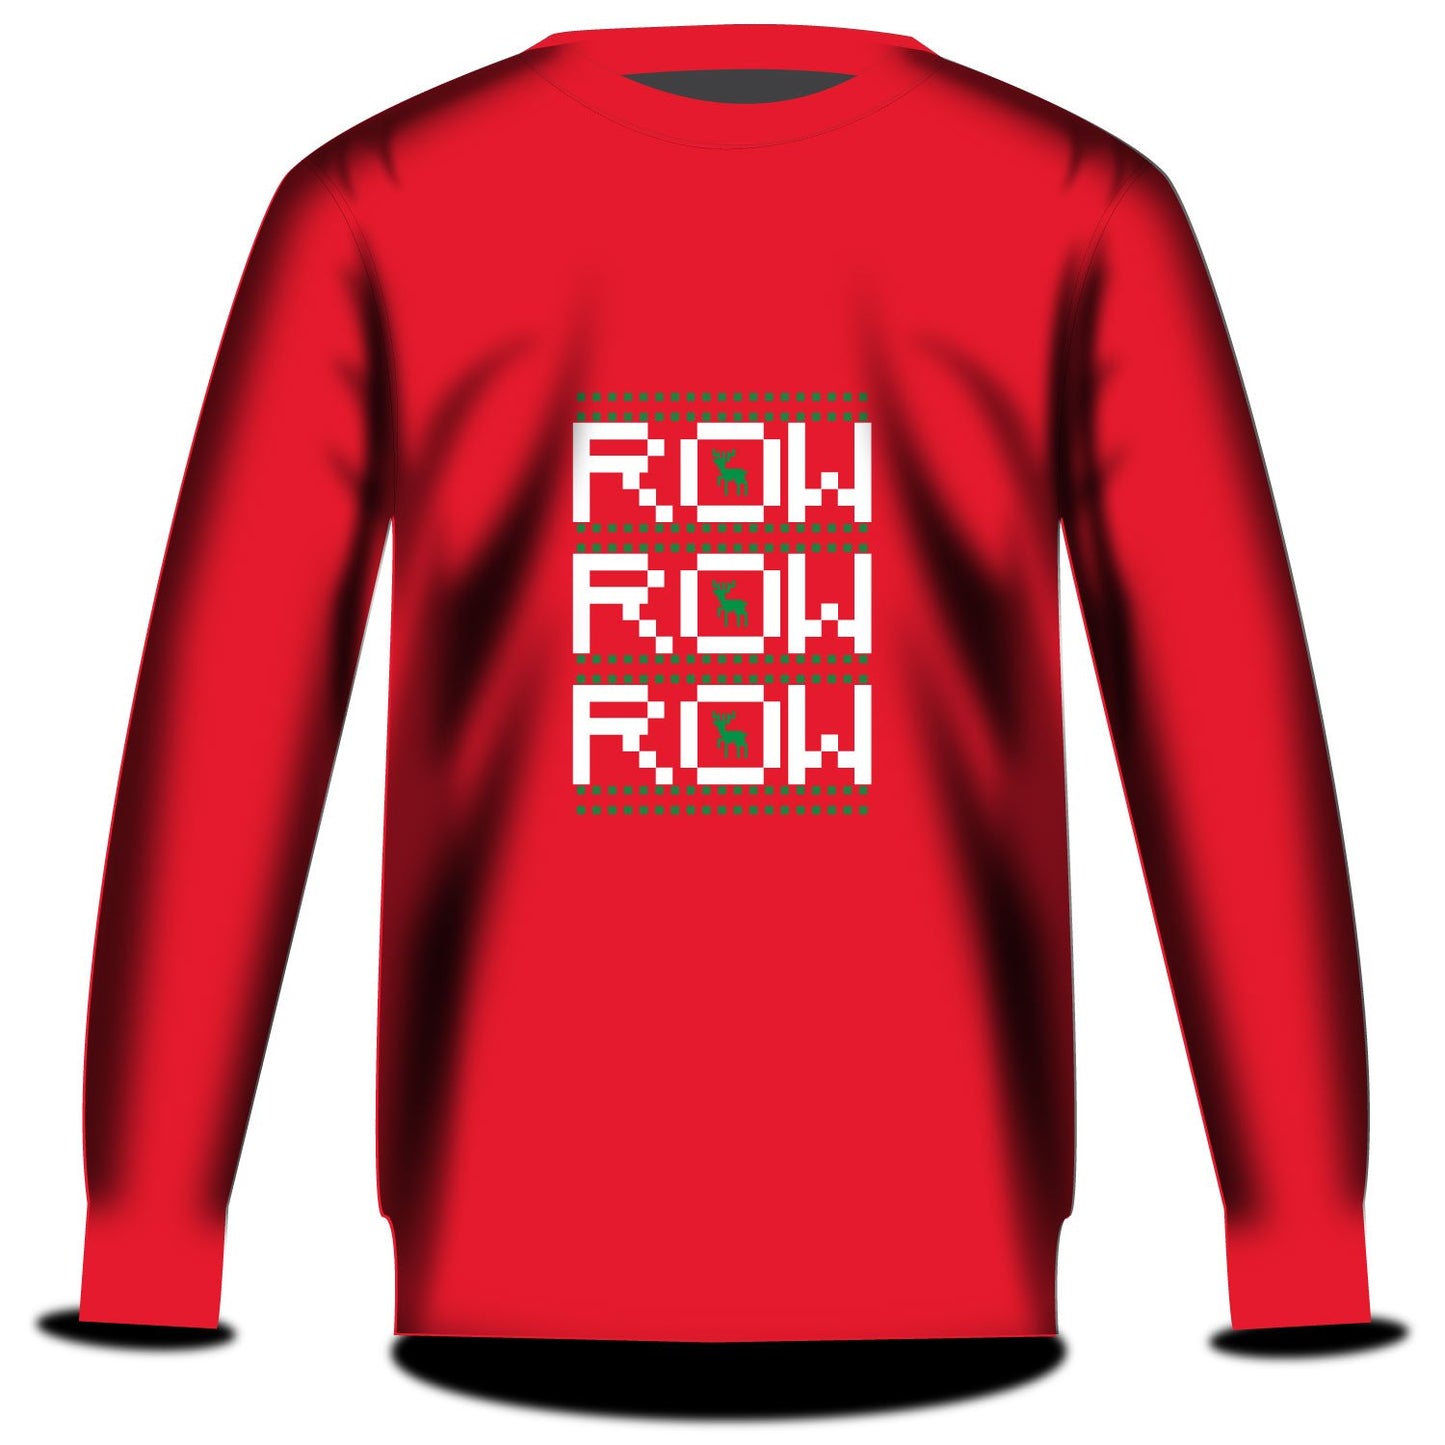 Stitch Rowing Row Row Row Sweatshirt